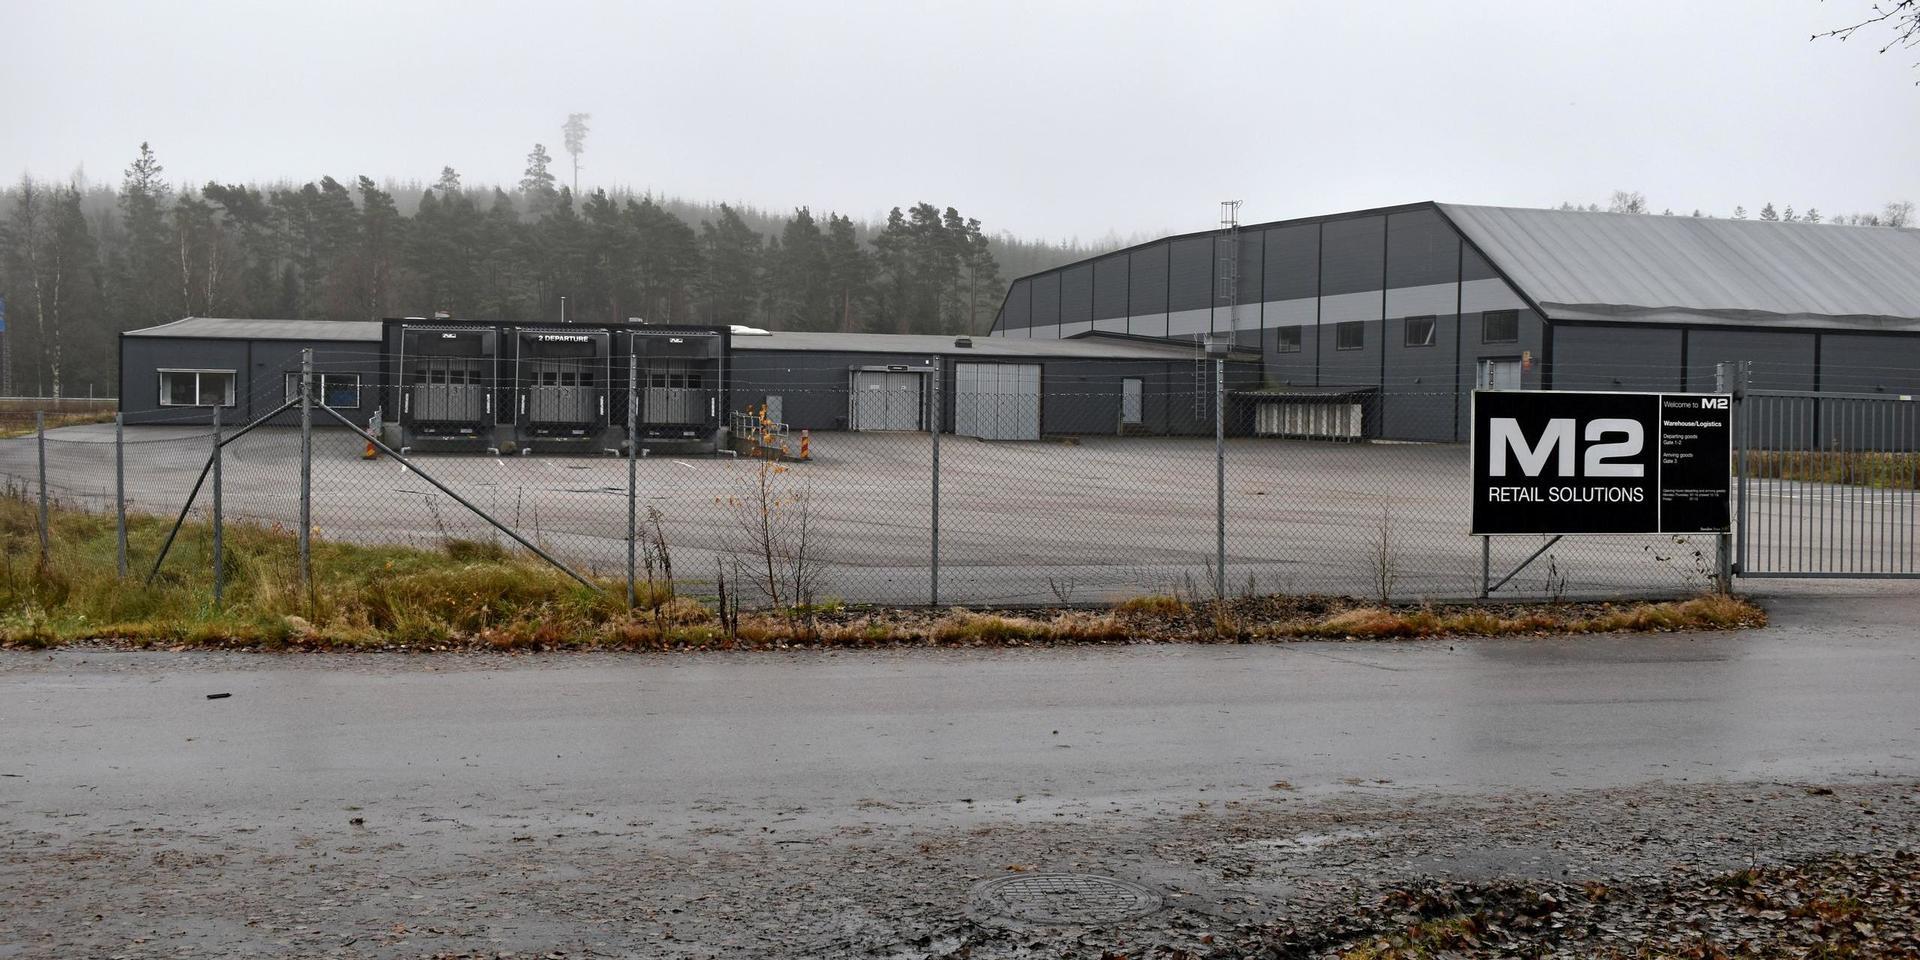 Purefun ska etablera sig i Torup och har köpt forna M2:s lagerlokal.